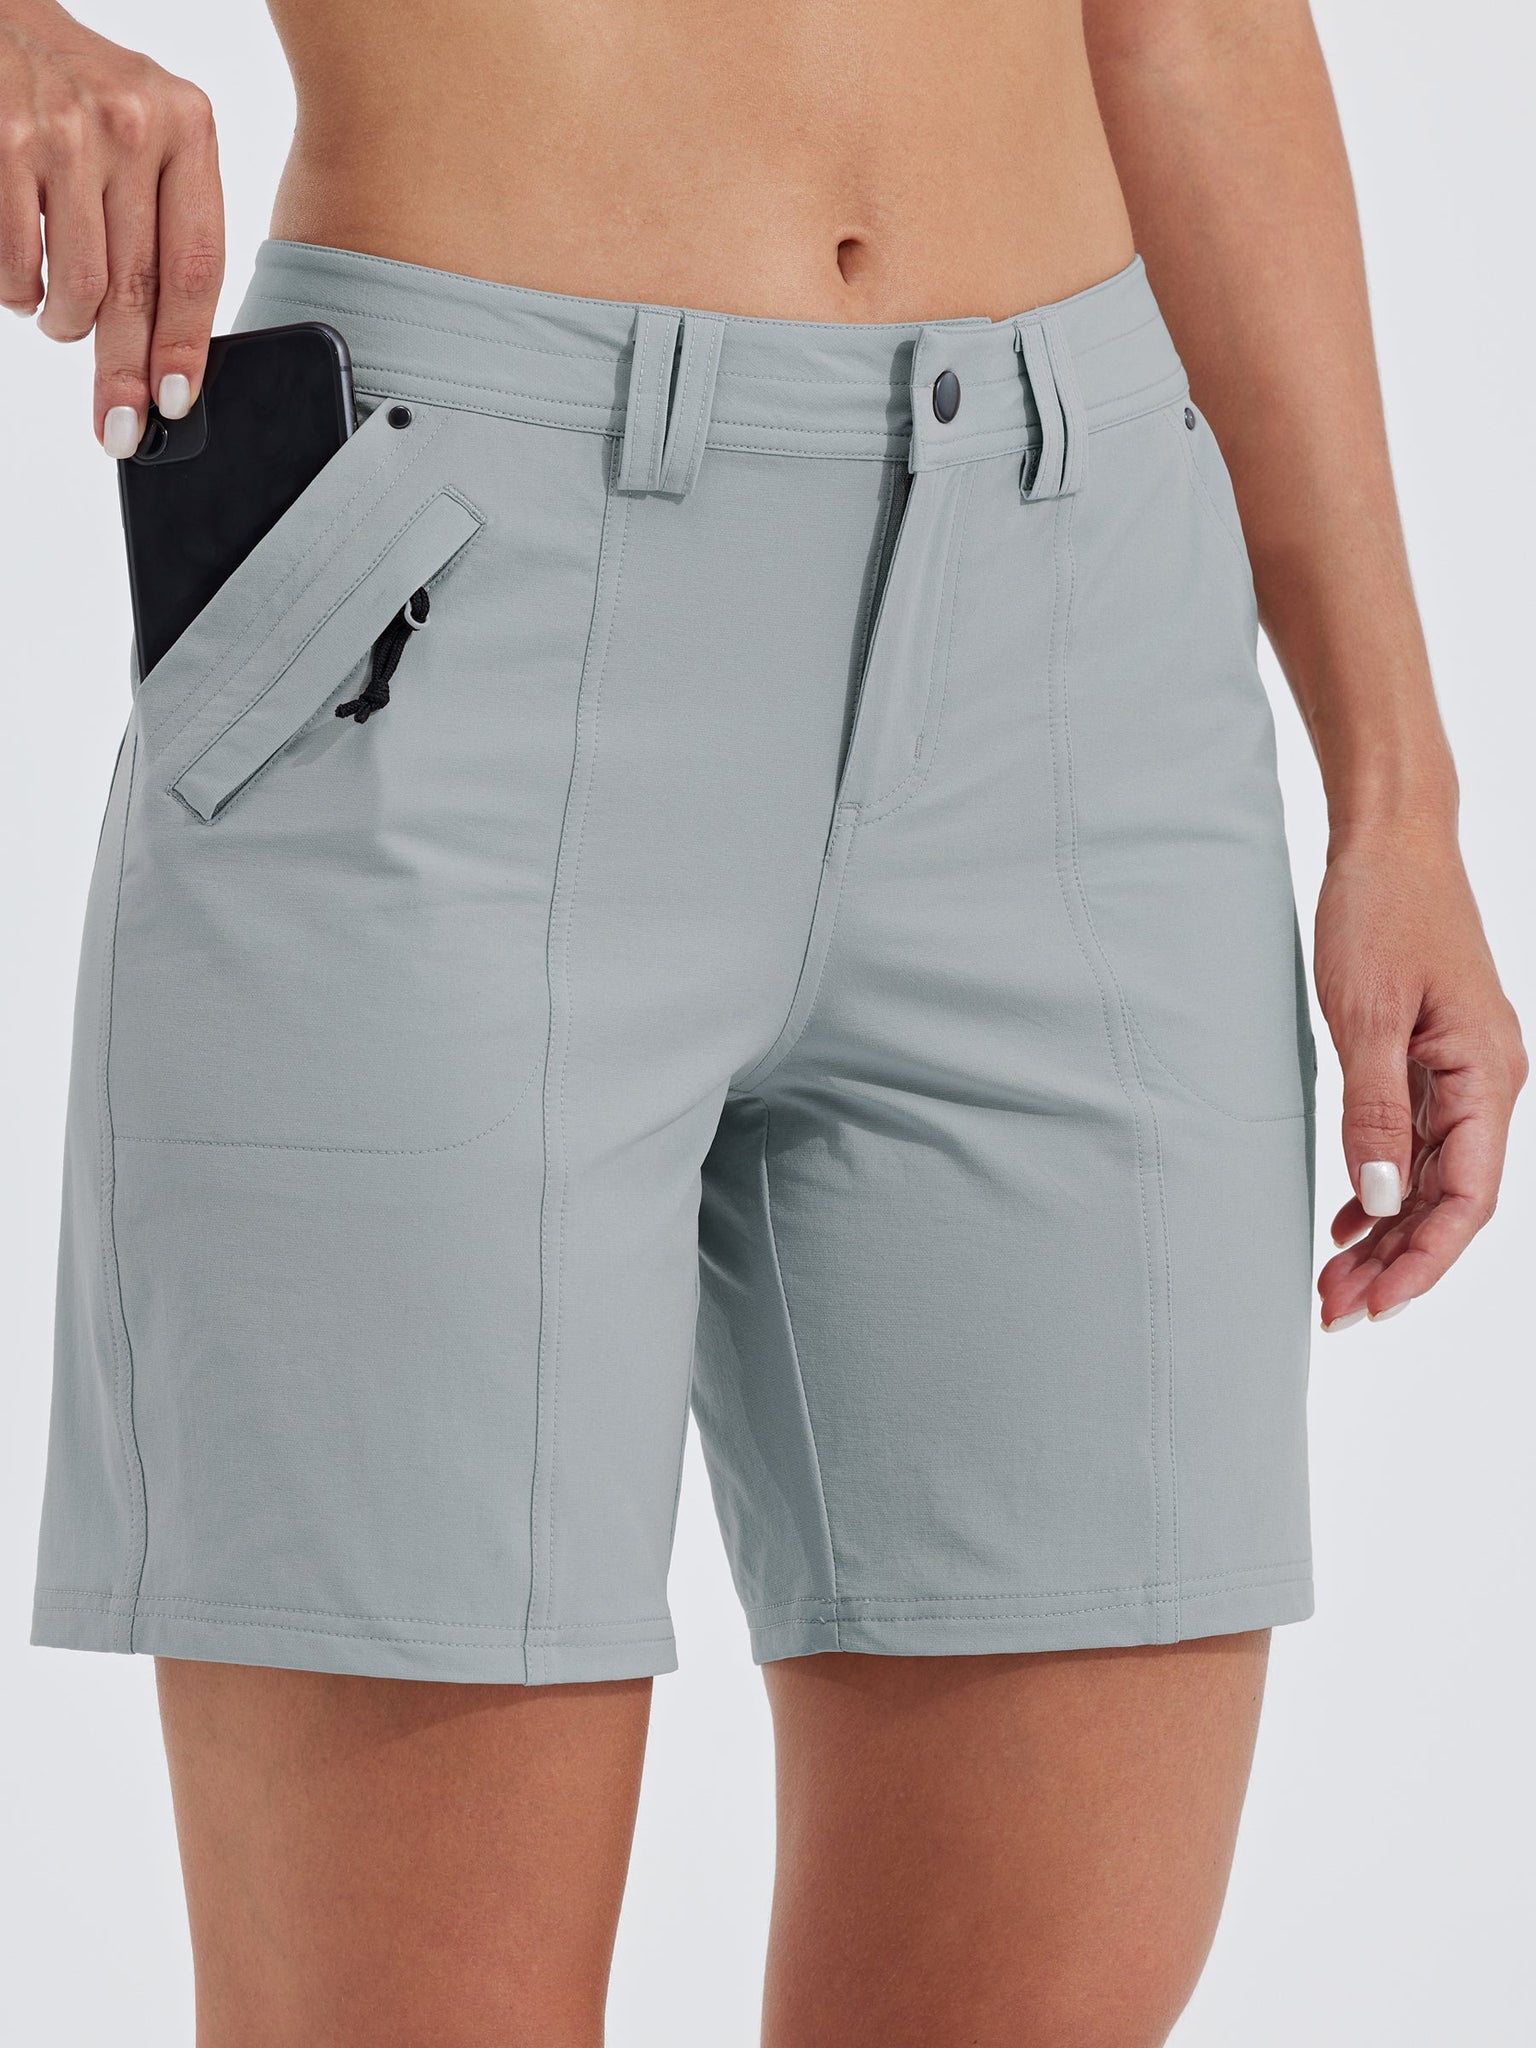 Women's Casual Golf Hiking 7 Inch Shorts